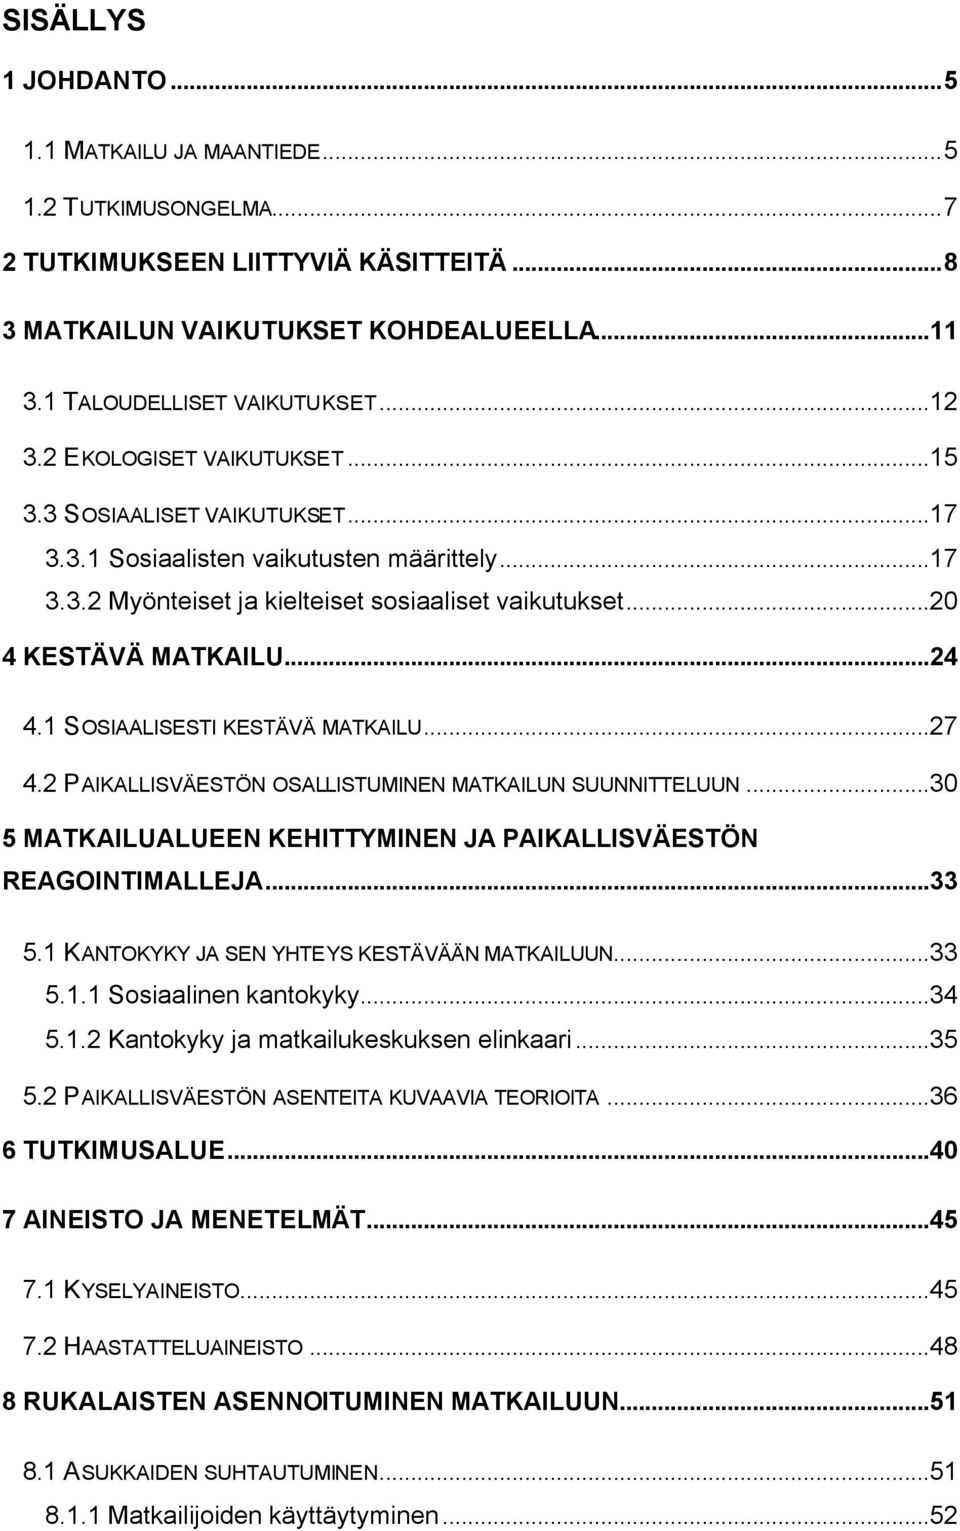 1 SOSIAALISESTI KESTÄVÄ MATKAILU...27 4.2 PAIKALLISVÄESTÖN OSALLISTUMINEN MATKAILUN SUUNNITTELUUN...30 5 MATKAILUALUEEN KEHITTYMINEN JA PAIKALLISVÄESTÖN REAGOINTIMALLEJA...33 5.